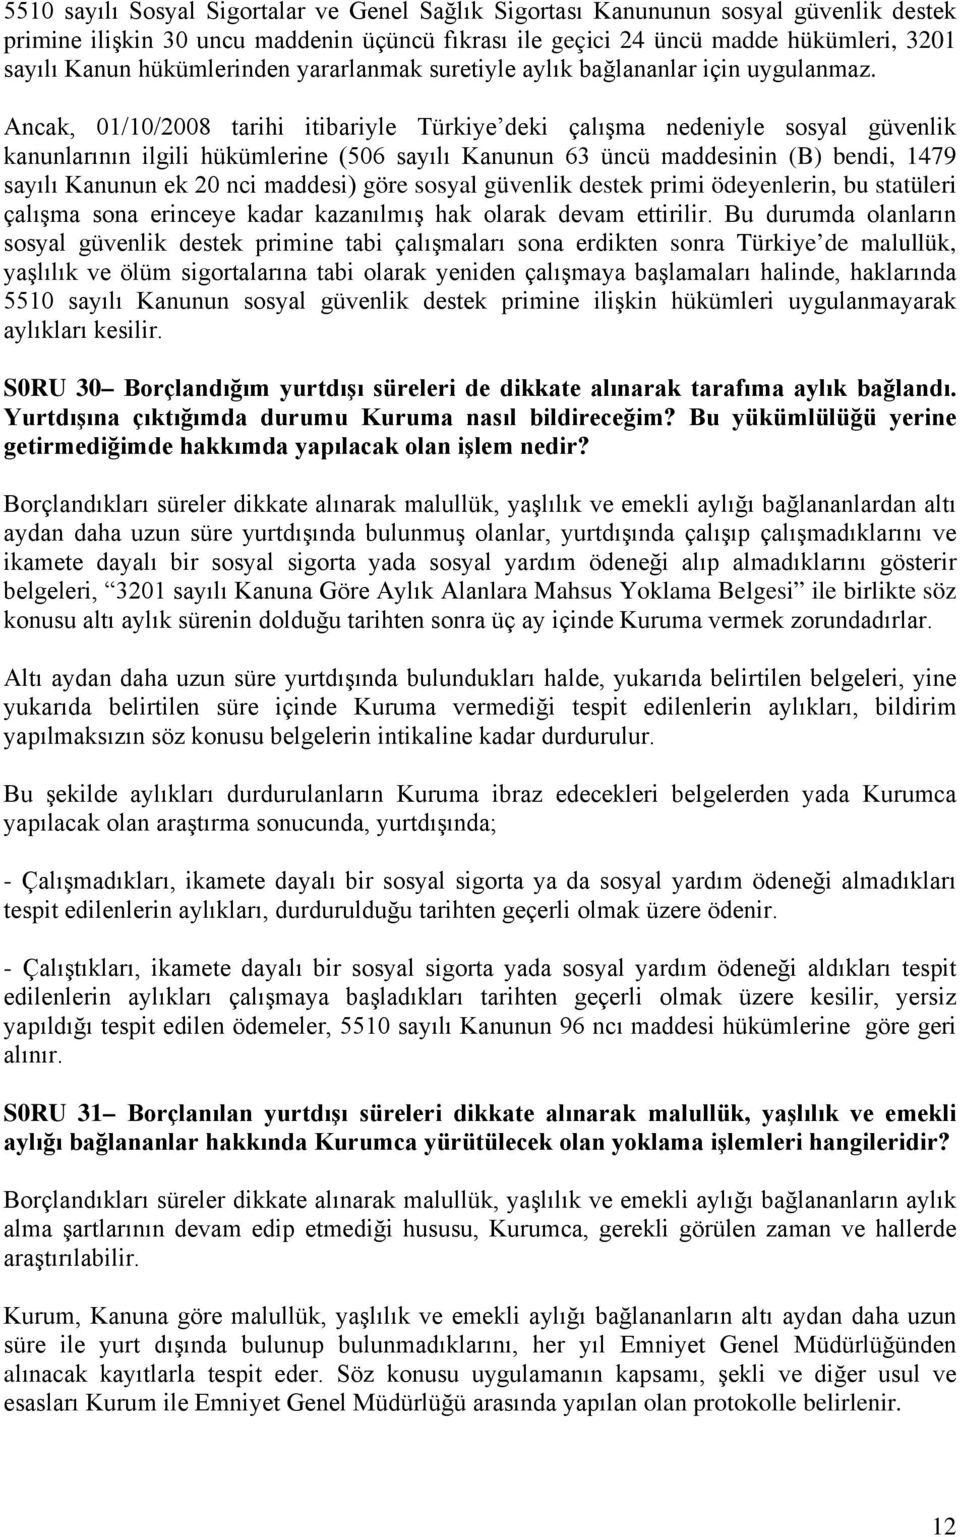 Ancak, 01/10/2008 tarihi itibariyle Türkiye deki çalışma nedeniyle sosyal güvenlik kanunlarının ilgili hükümlerine (506 sayılı Kanunun 63 üncü maddesinin (B) bendi, 1479 sayılı Kanunun ek 20 nci